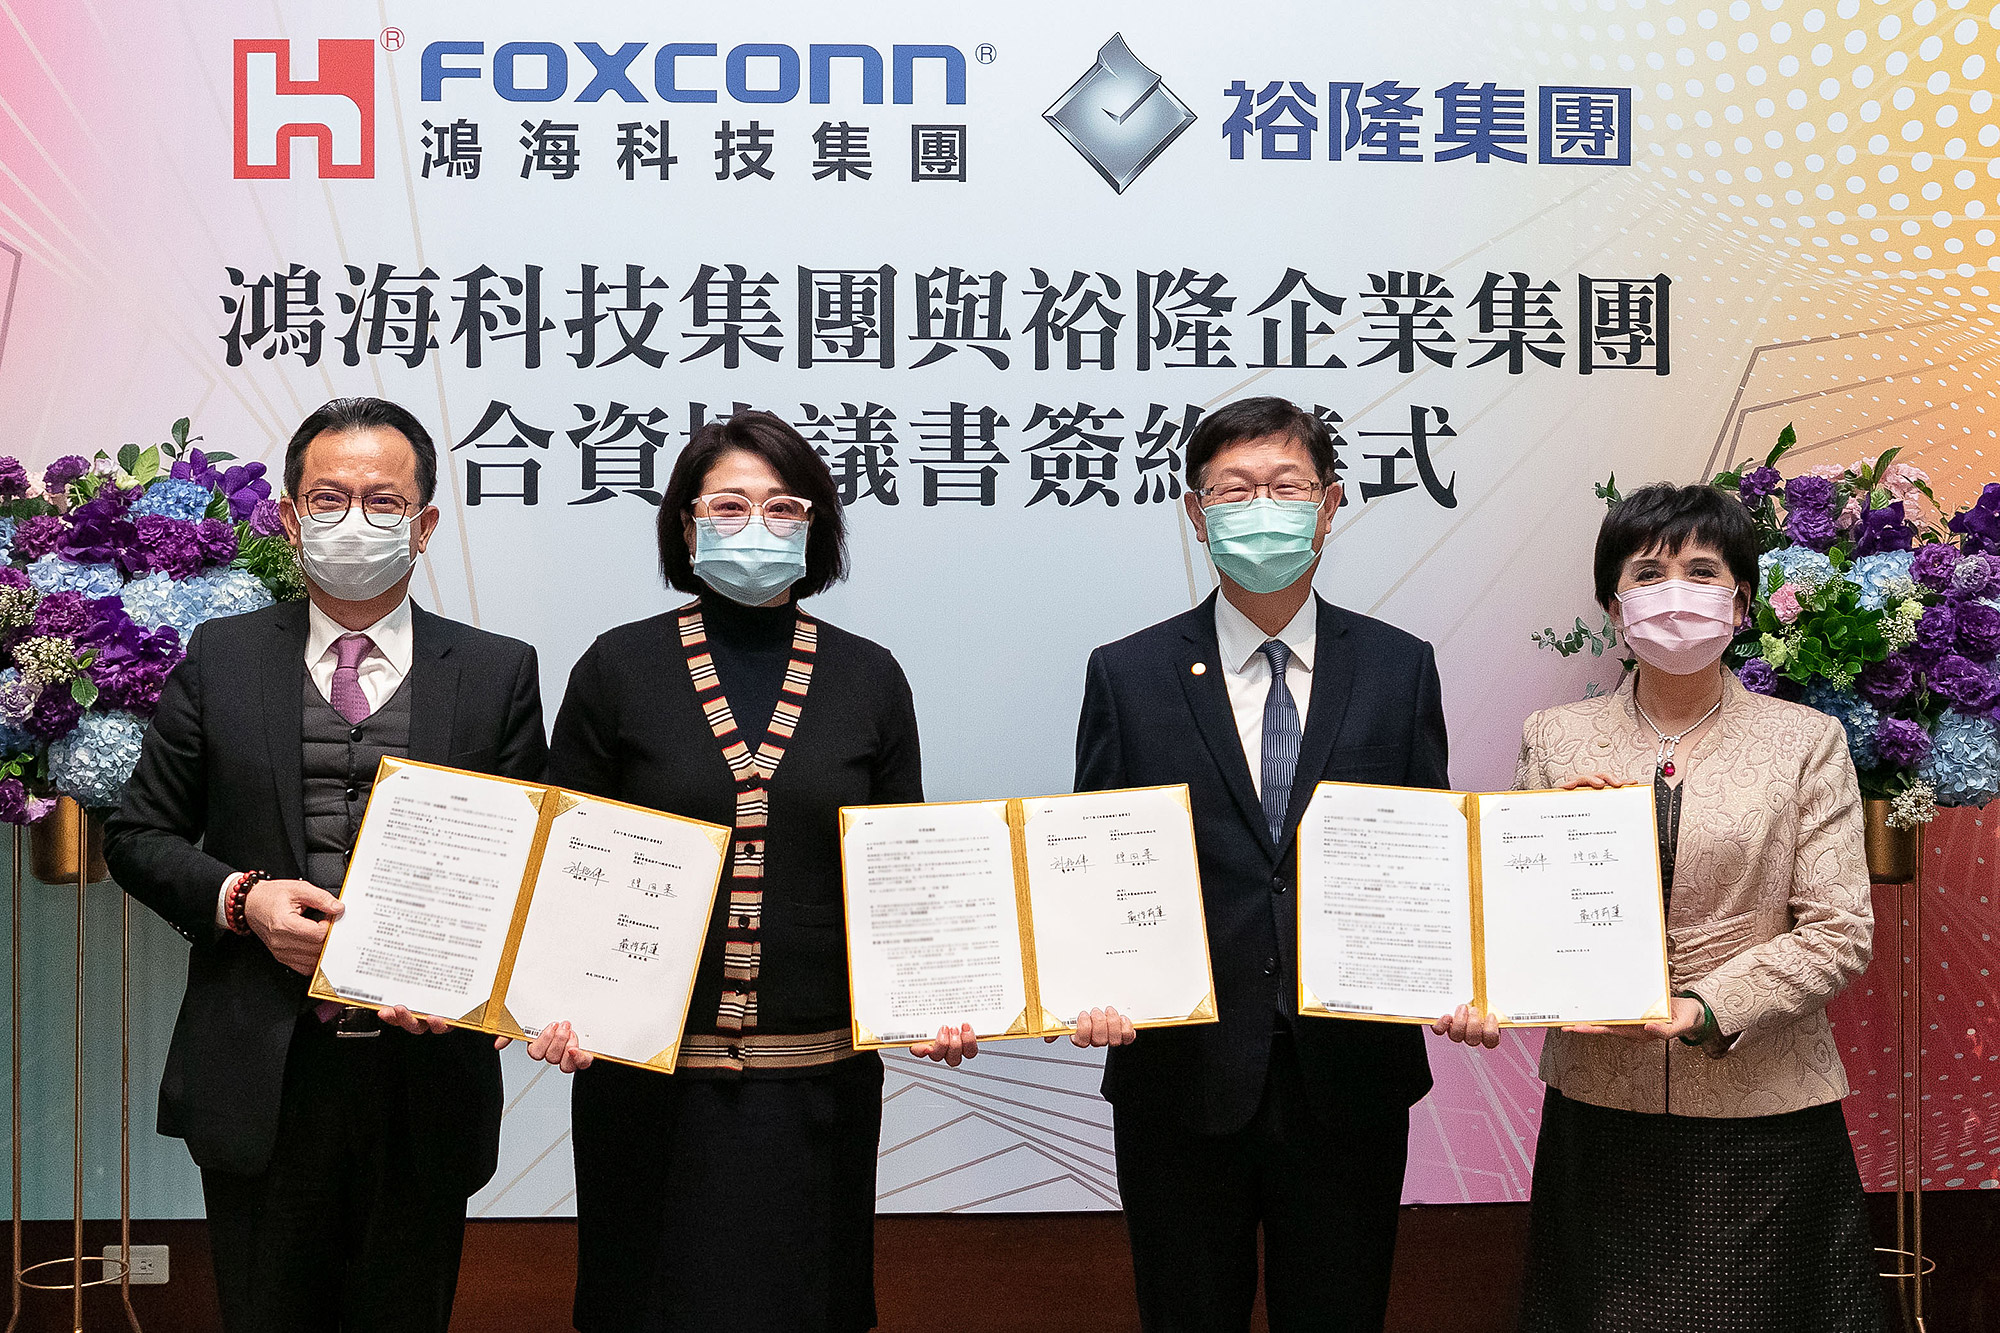 鴻海科技集團與裕隆集團於 3 月份正式簽署合資協議。 